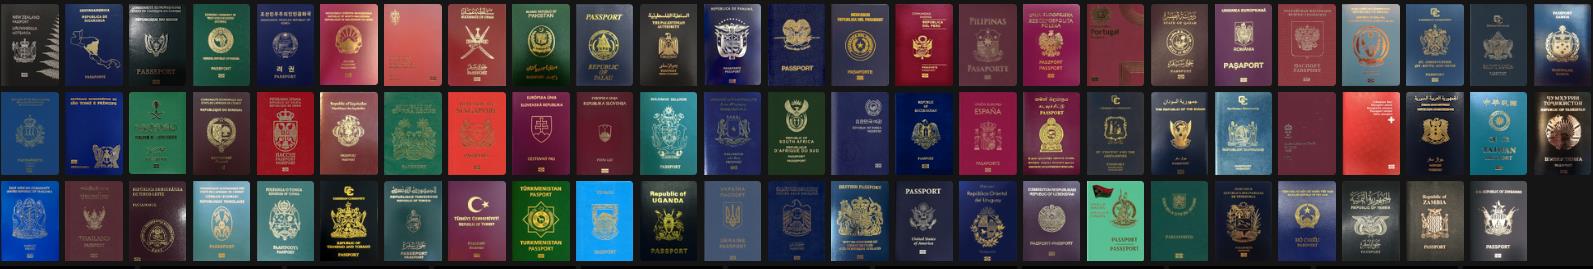 护照免签